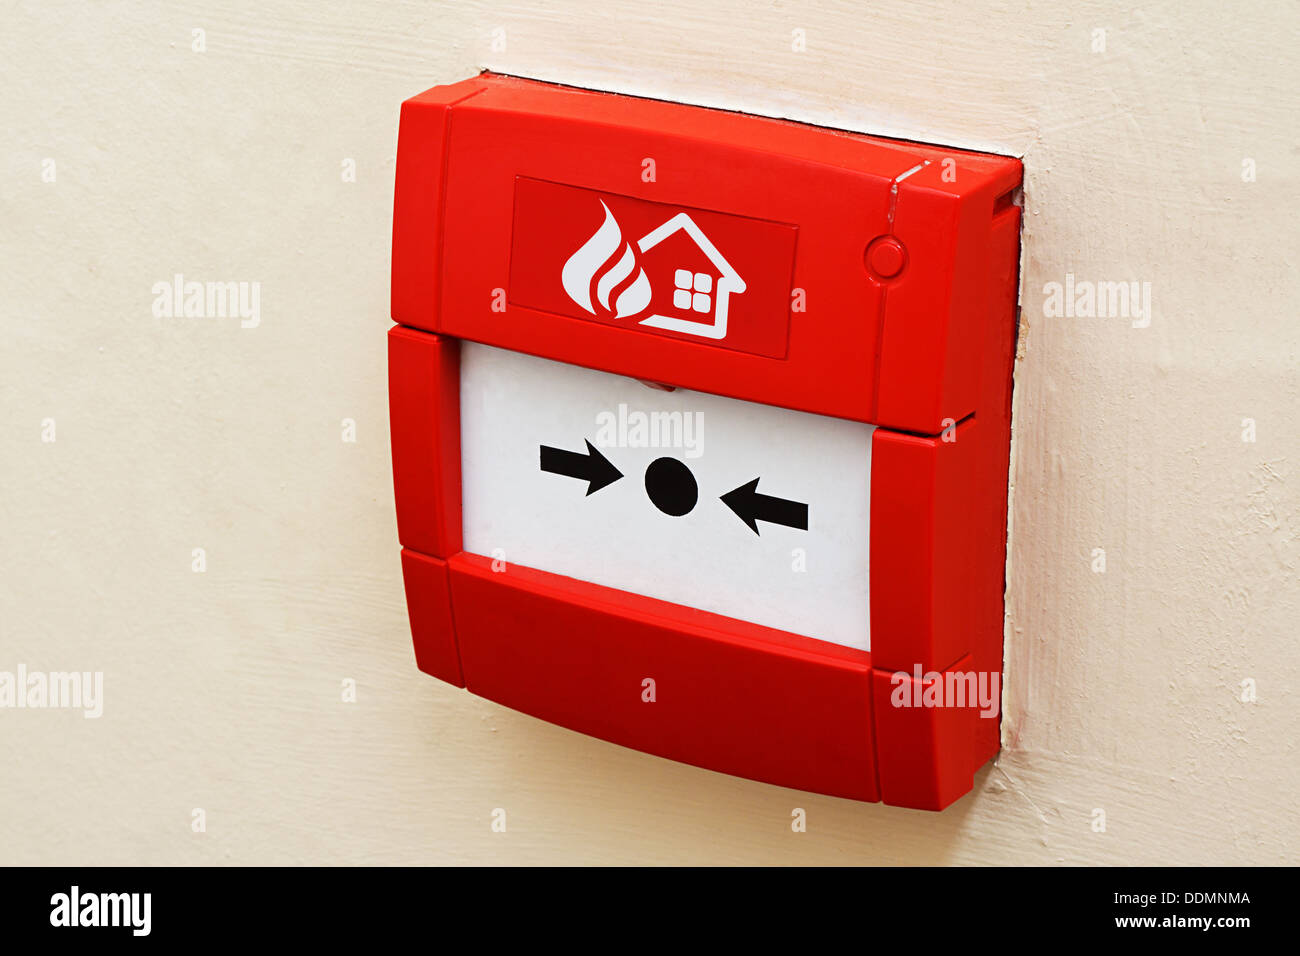 Wand montiert Red Fire Alarm-Taste verwendet, um Warnsysteme in Gebäuden zu aktivieren Stockfoto